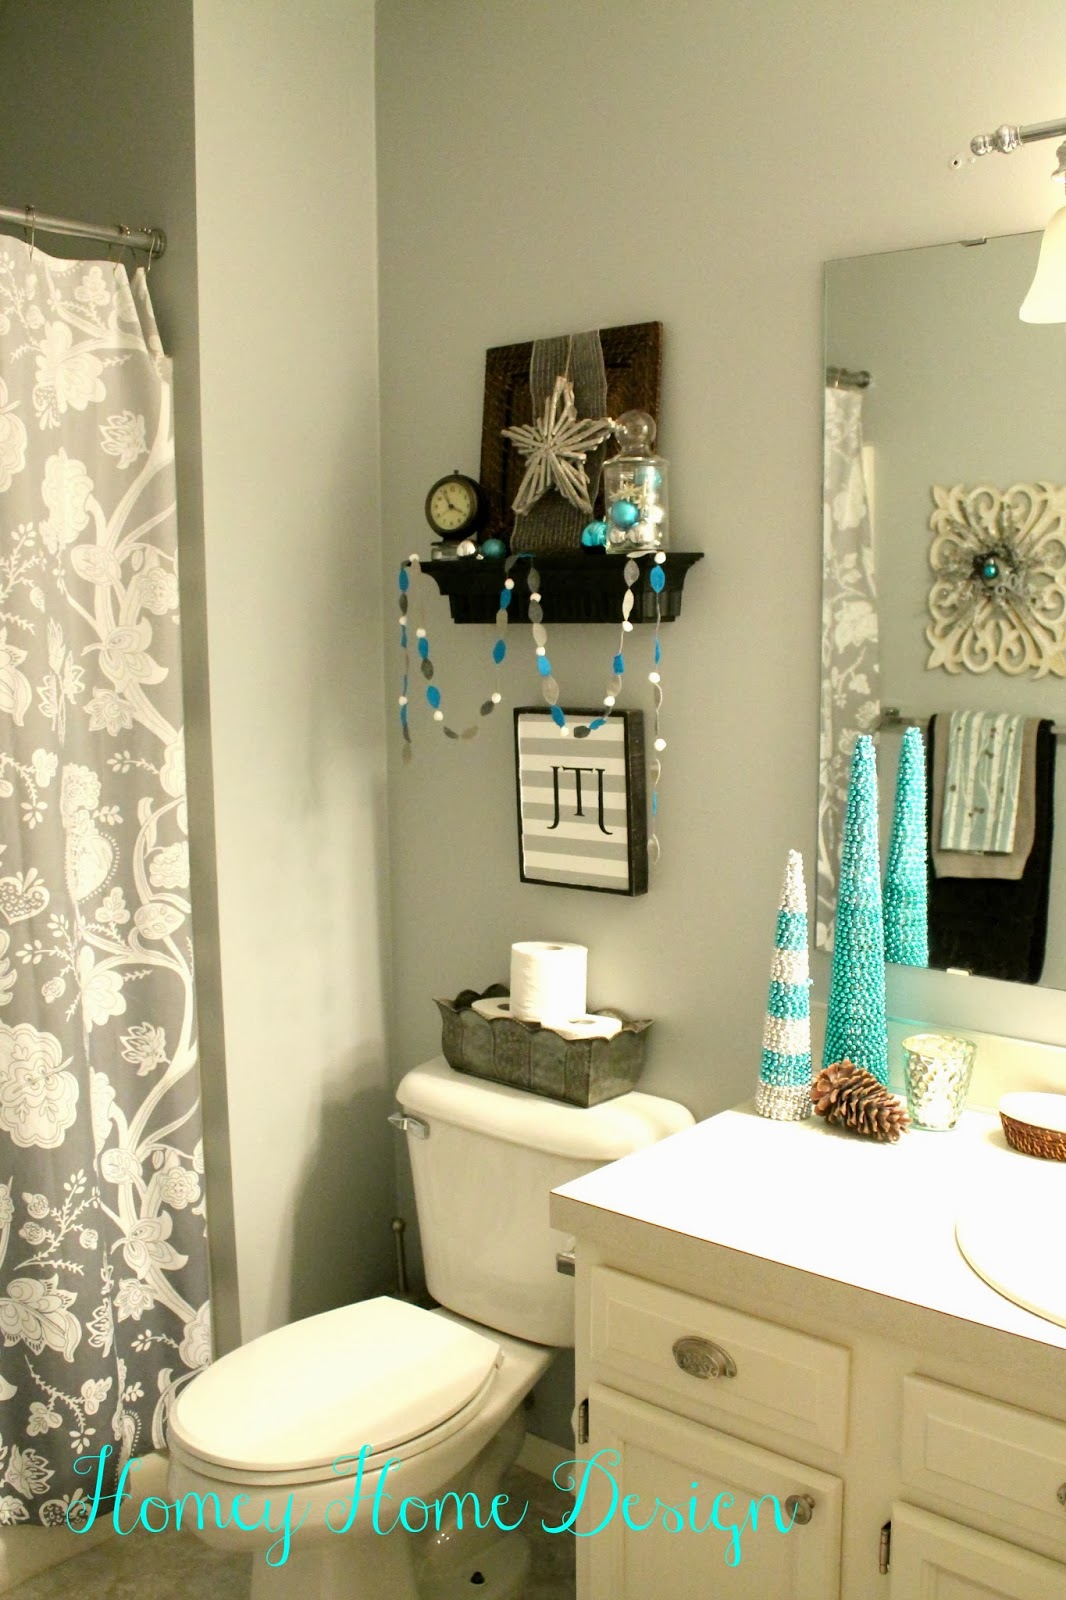 homey home design: Bathroom Christmas Ideas